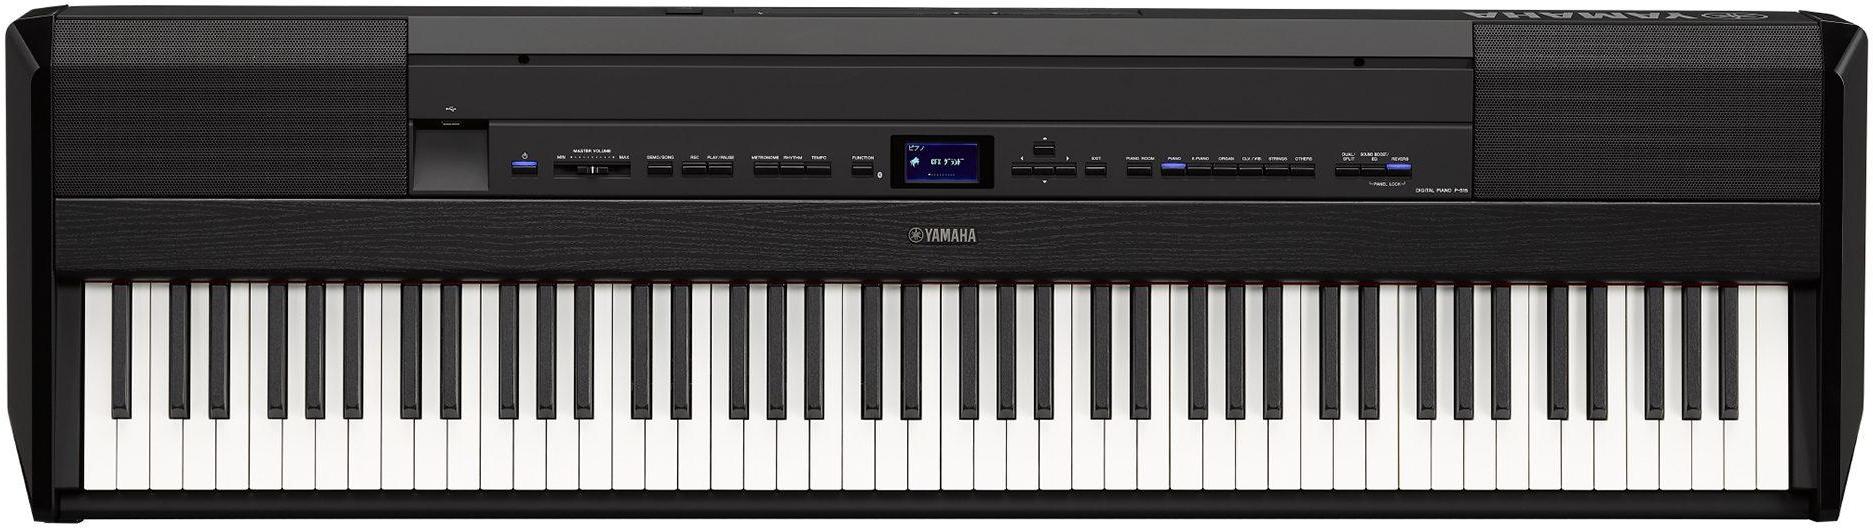 Draagbaar digitale piano Yamaha P-515 - Black